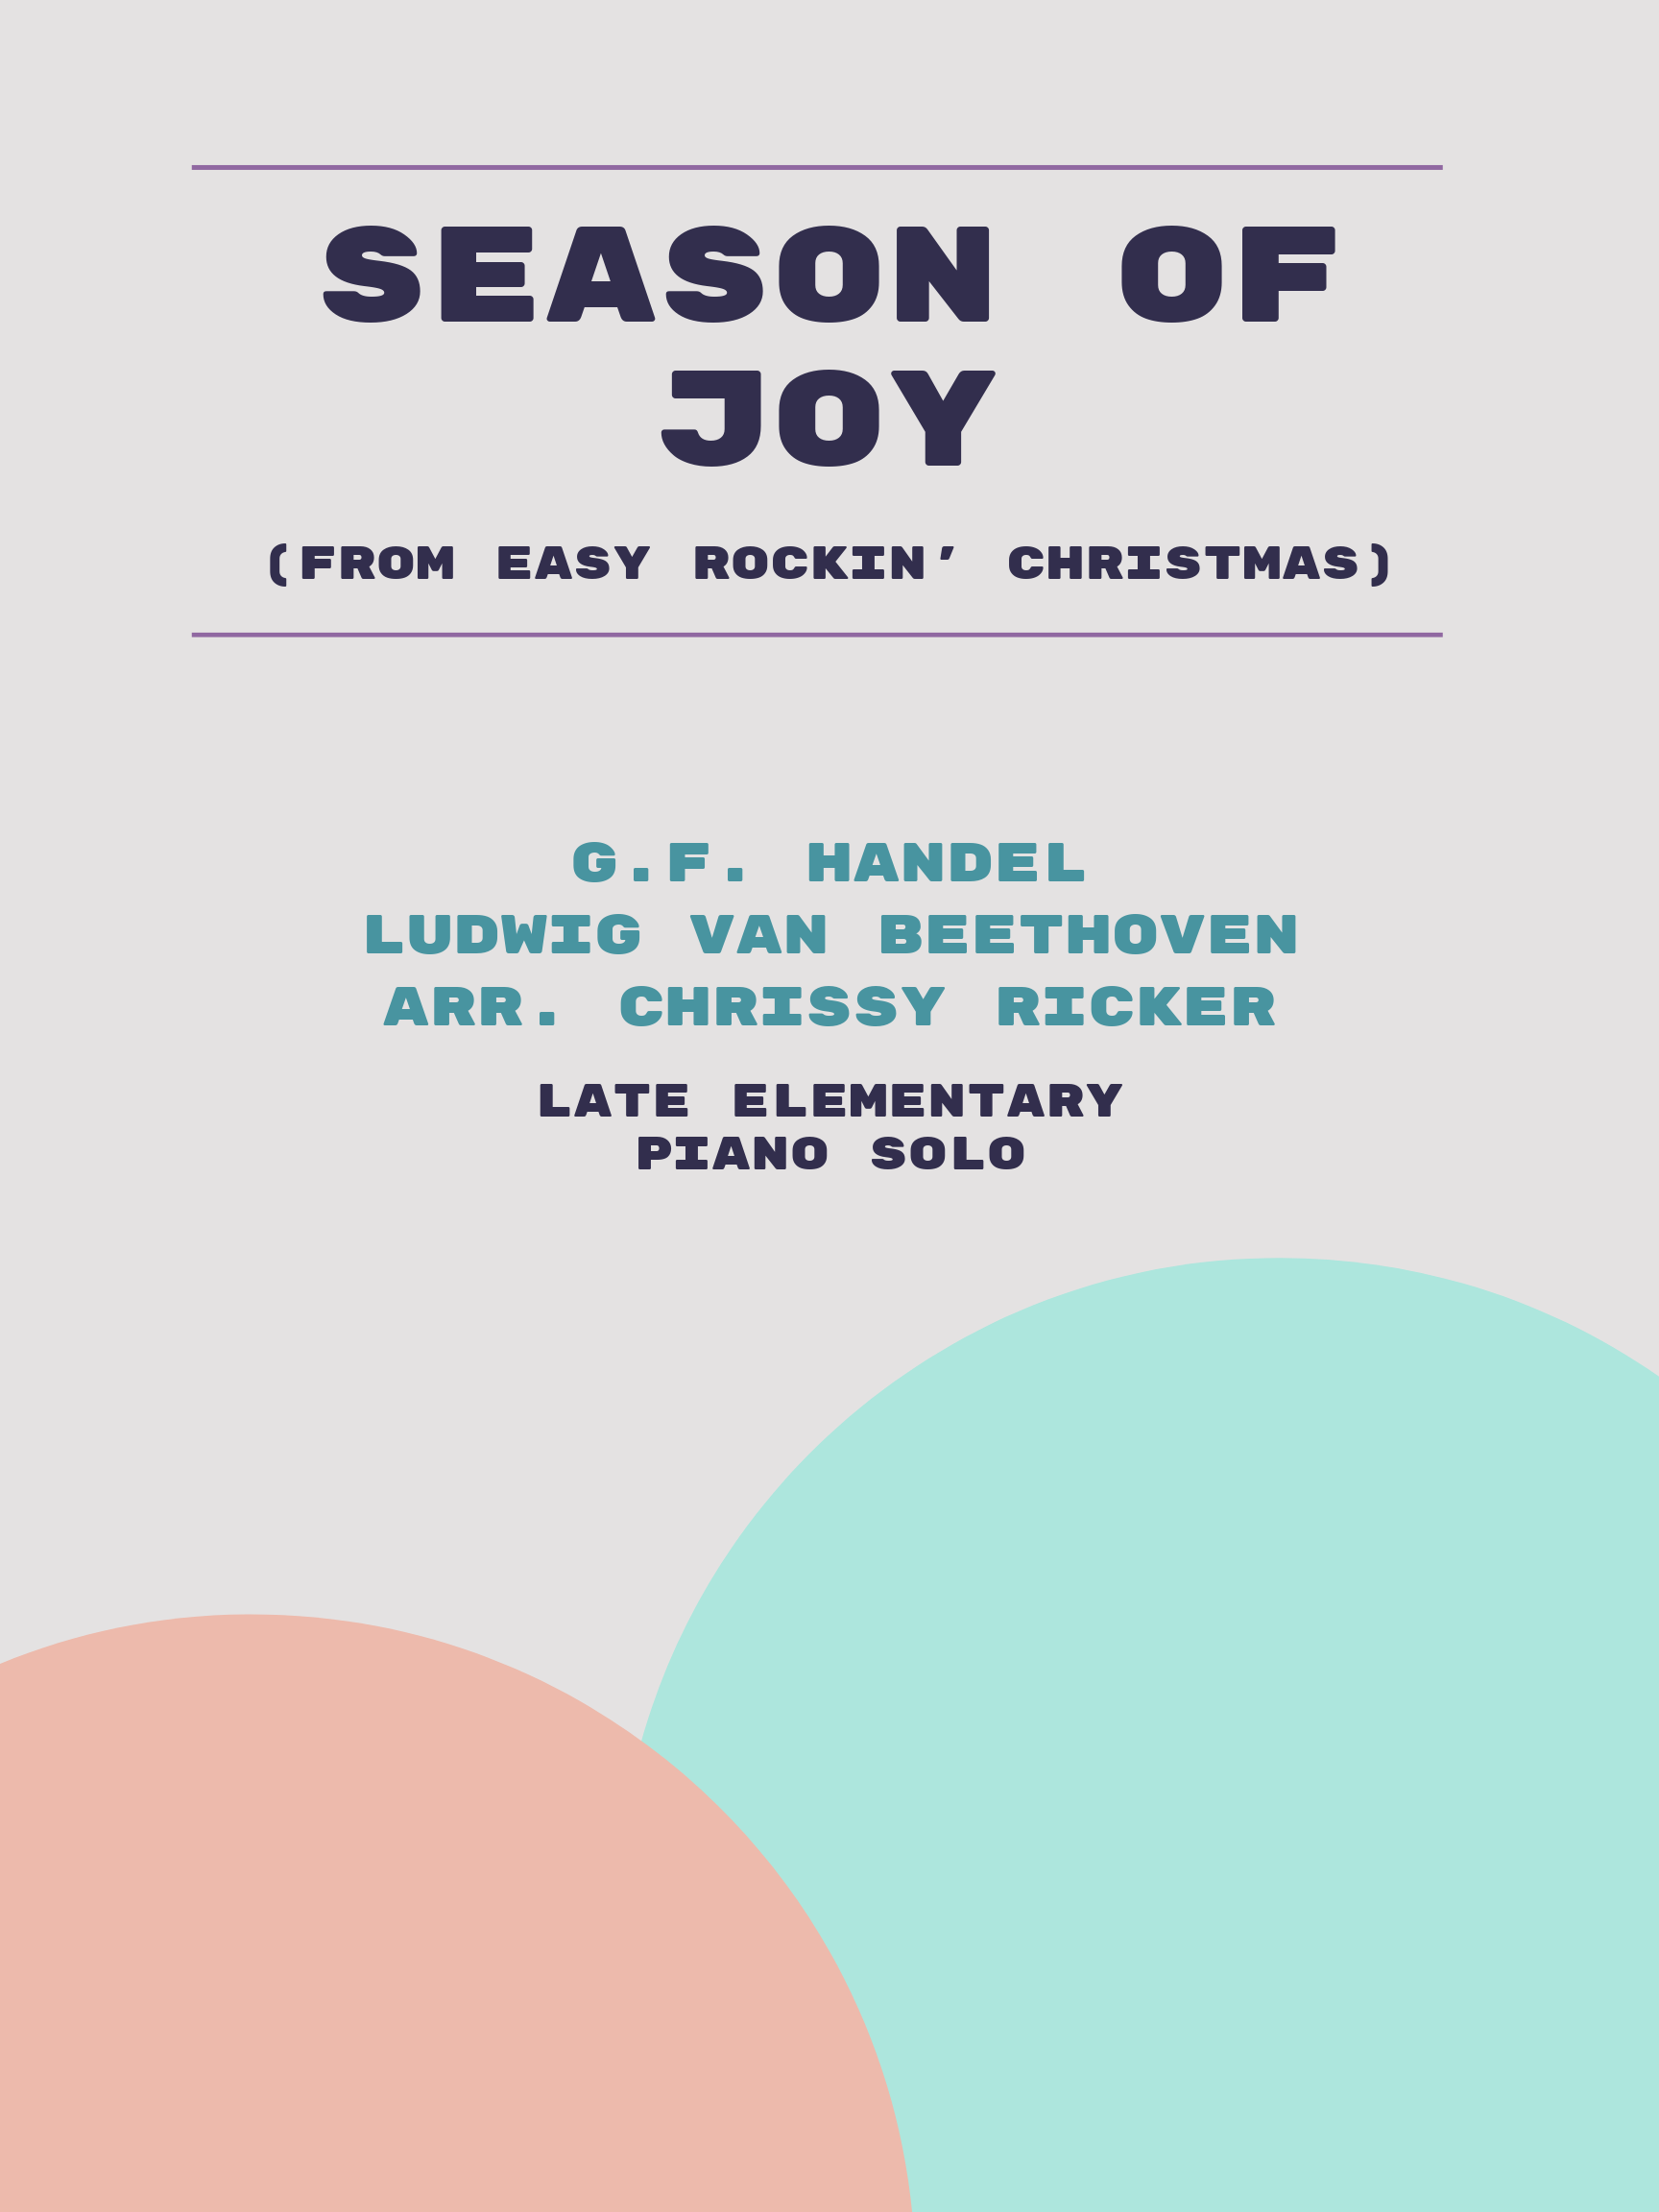 Season of Joy by G.F. Handel, Ludwig van Beethoven